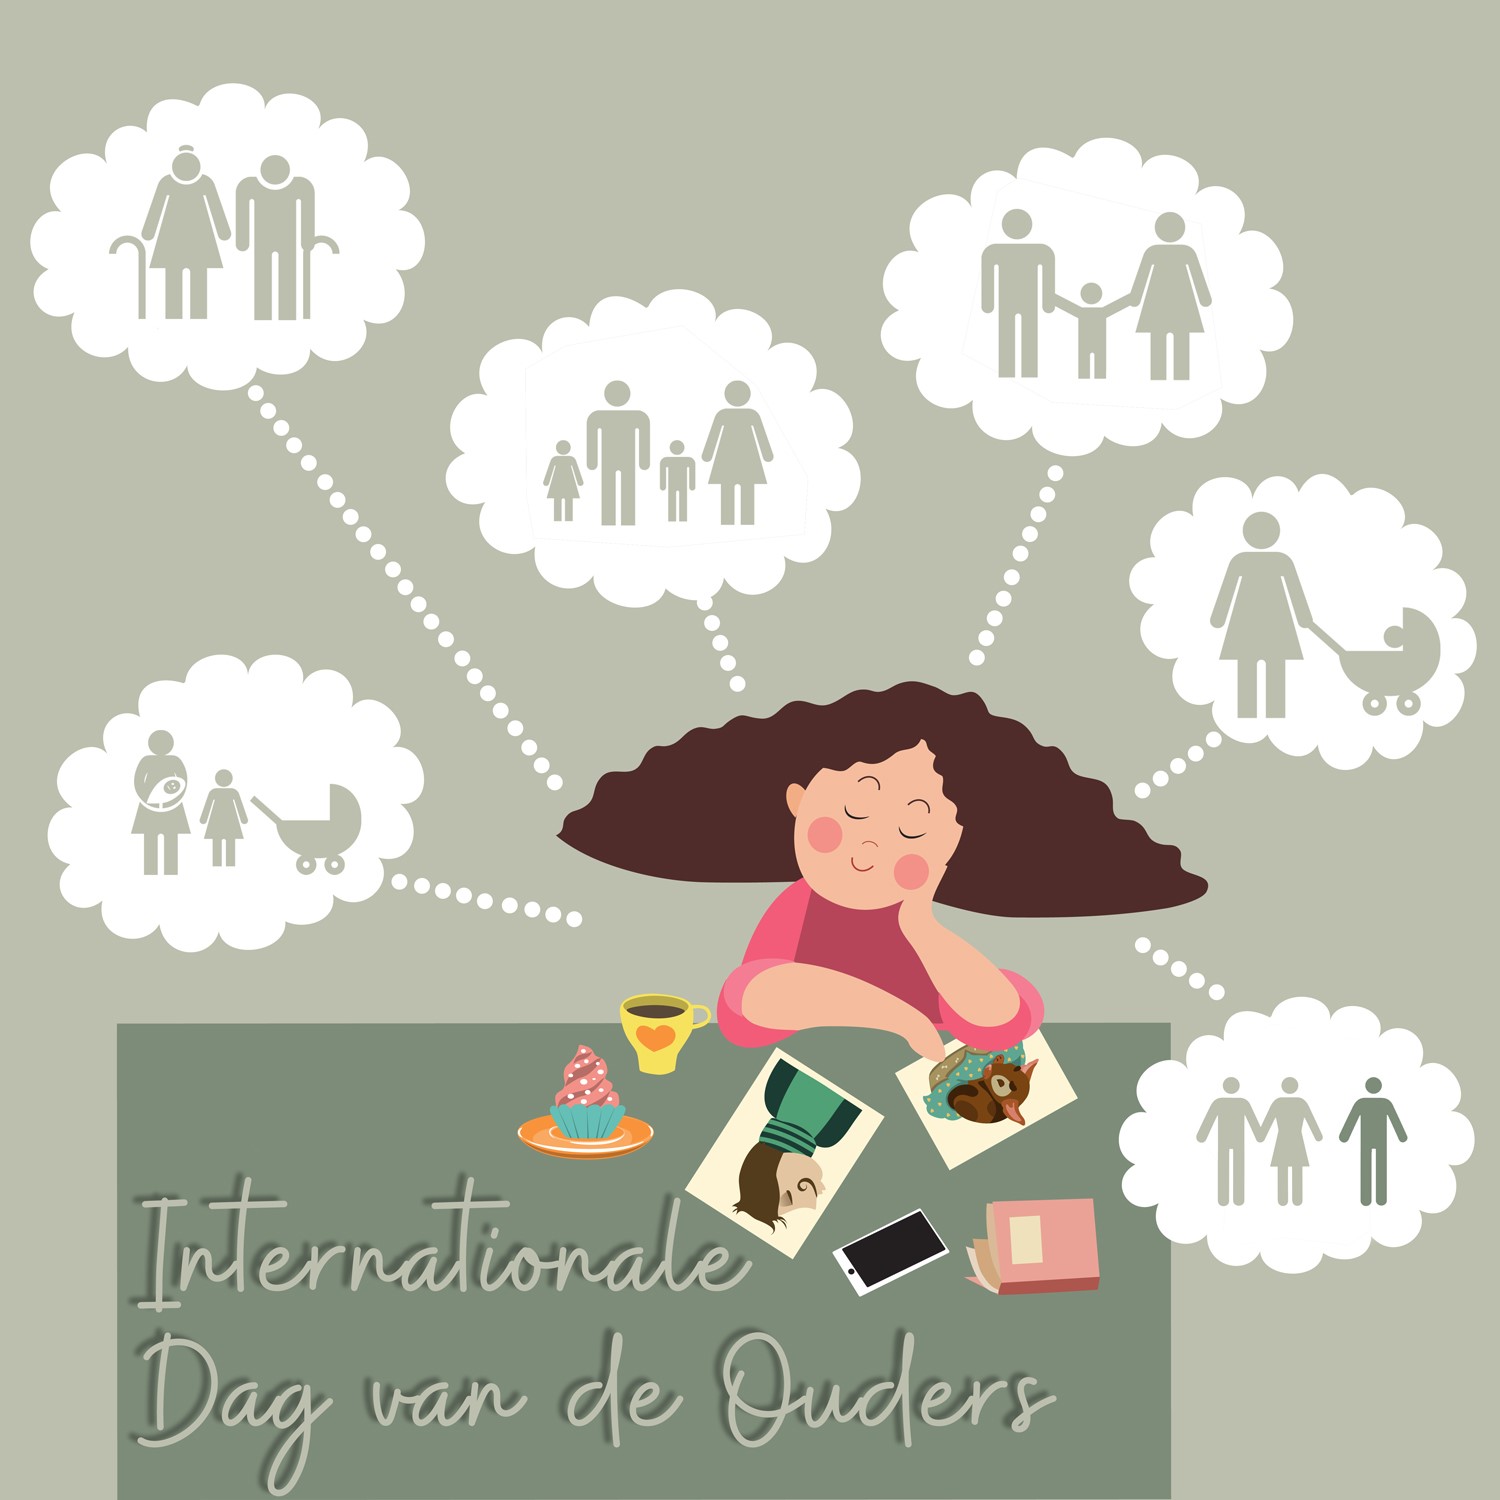 Op 1 juni vieren wij de Internationale dag van de ouders